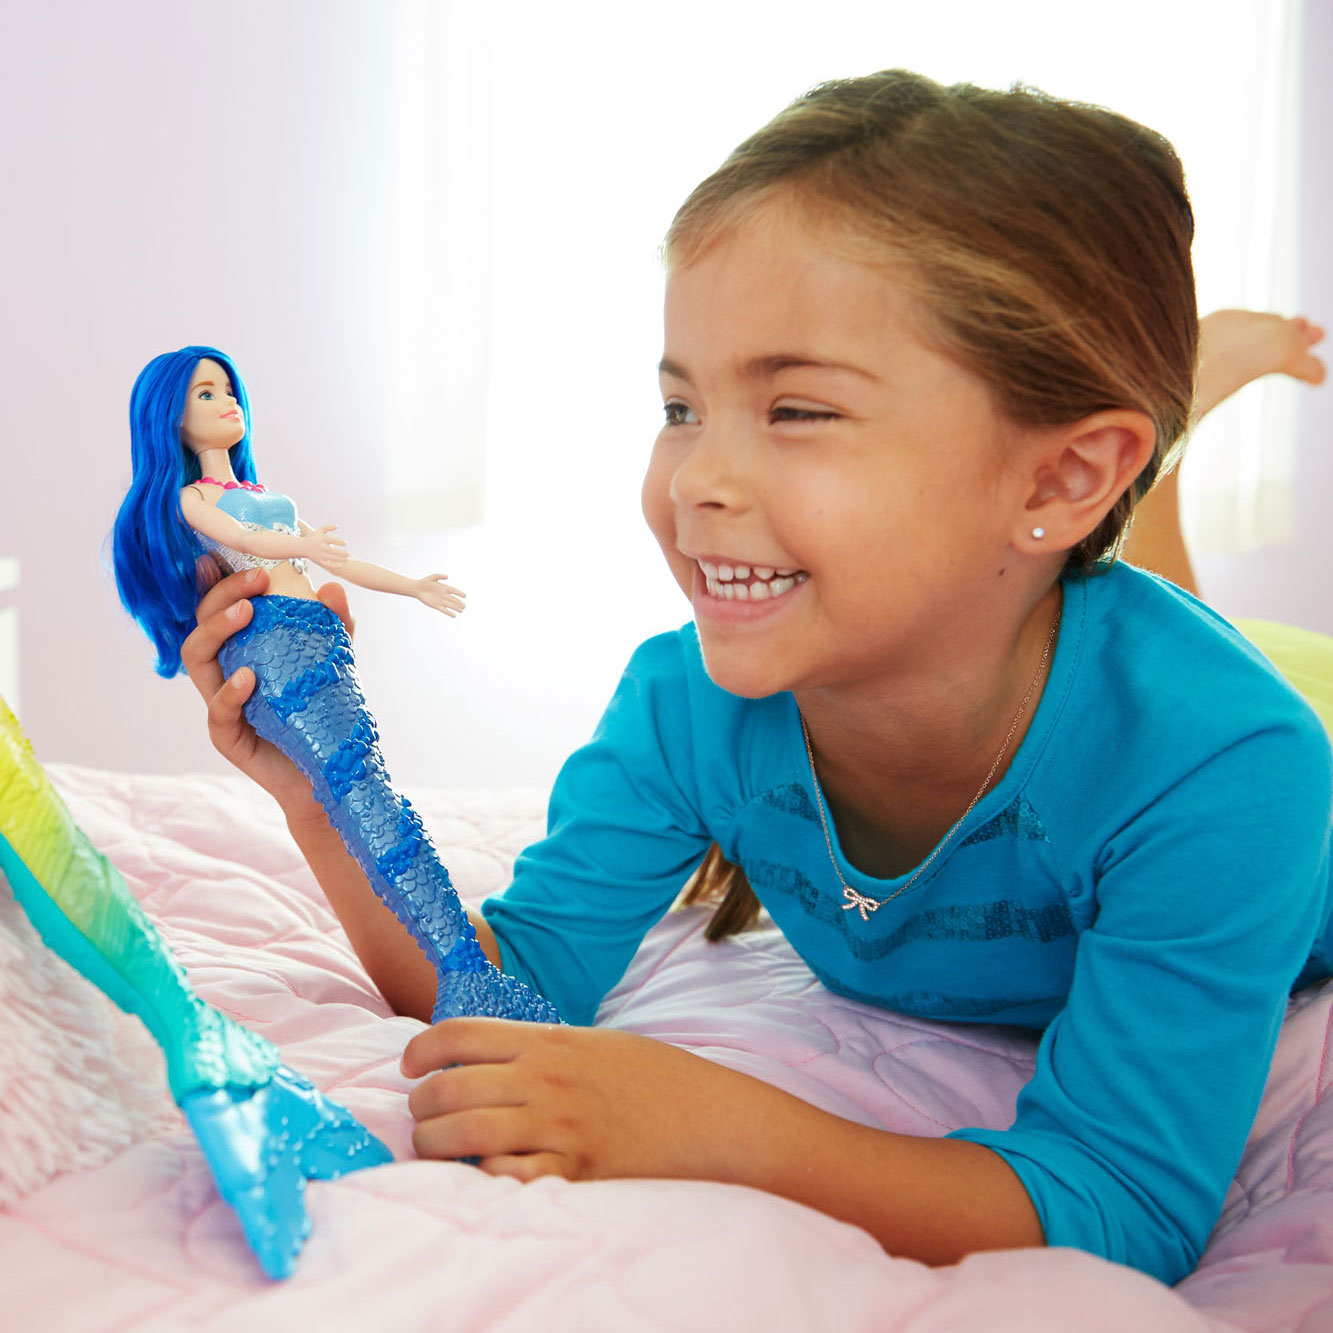 Barbie Dreamtopia Glinsterberg Zeemeermin Pop